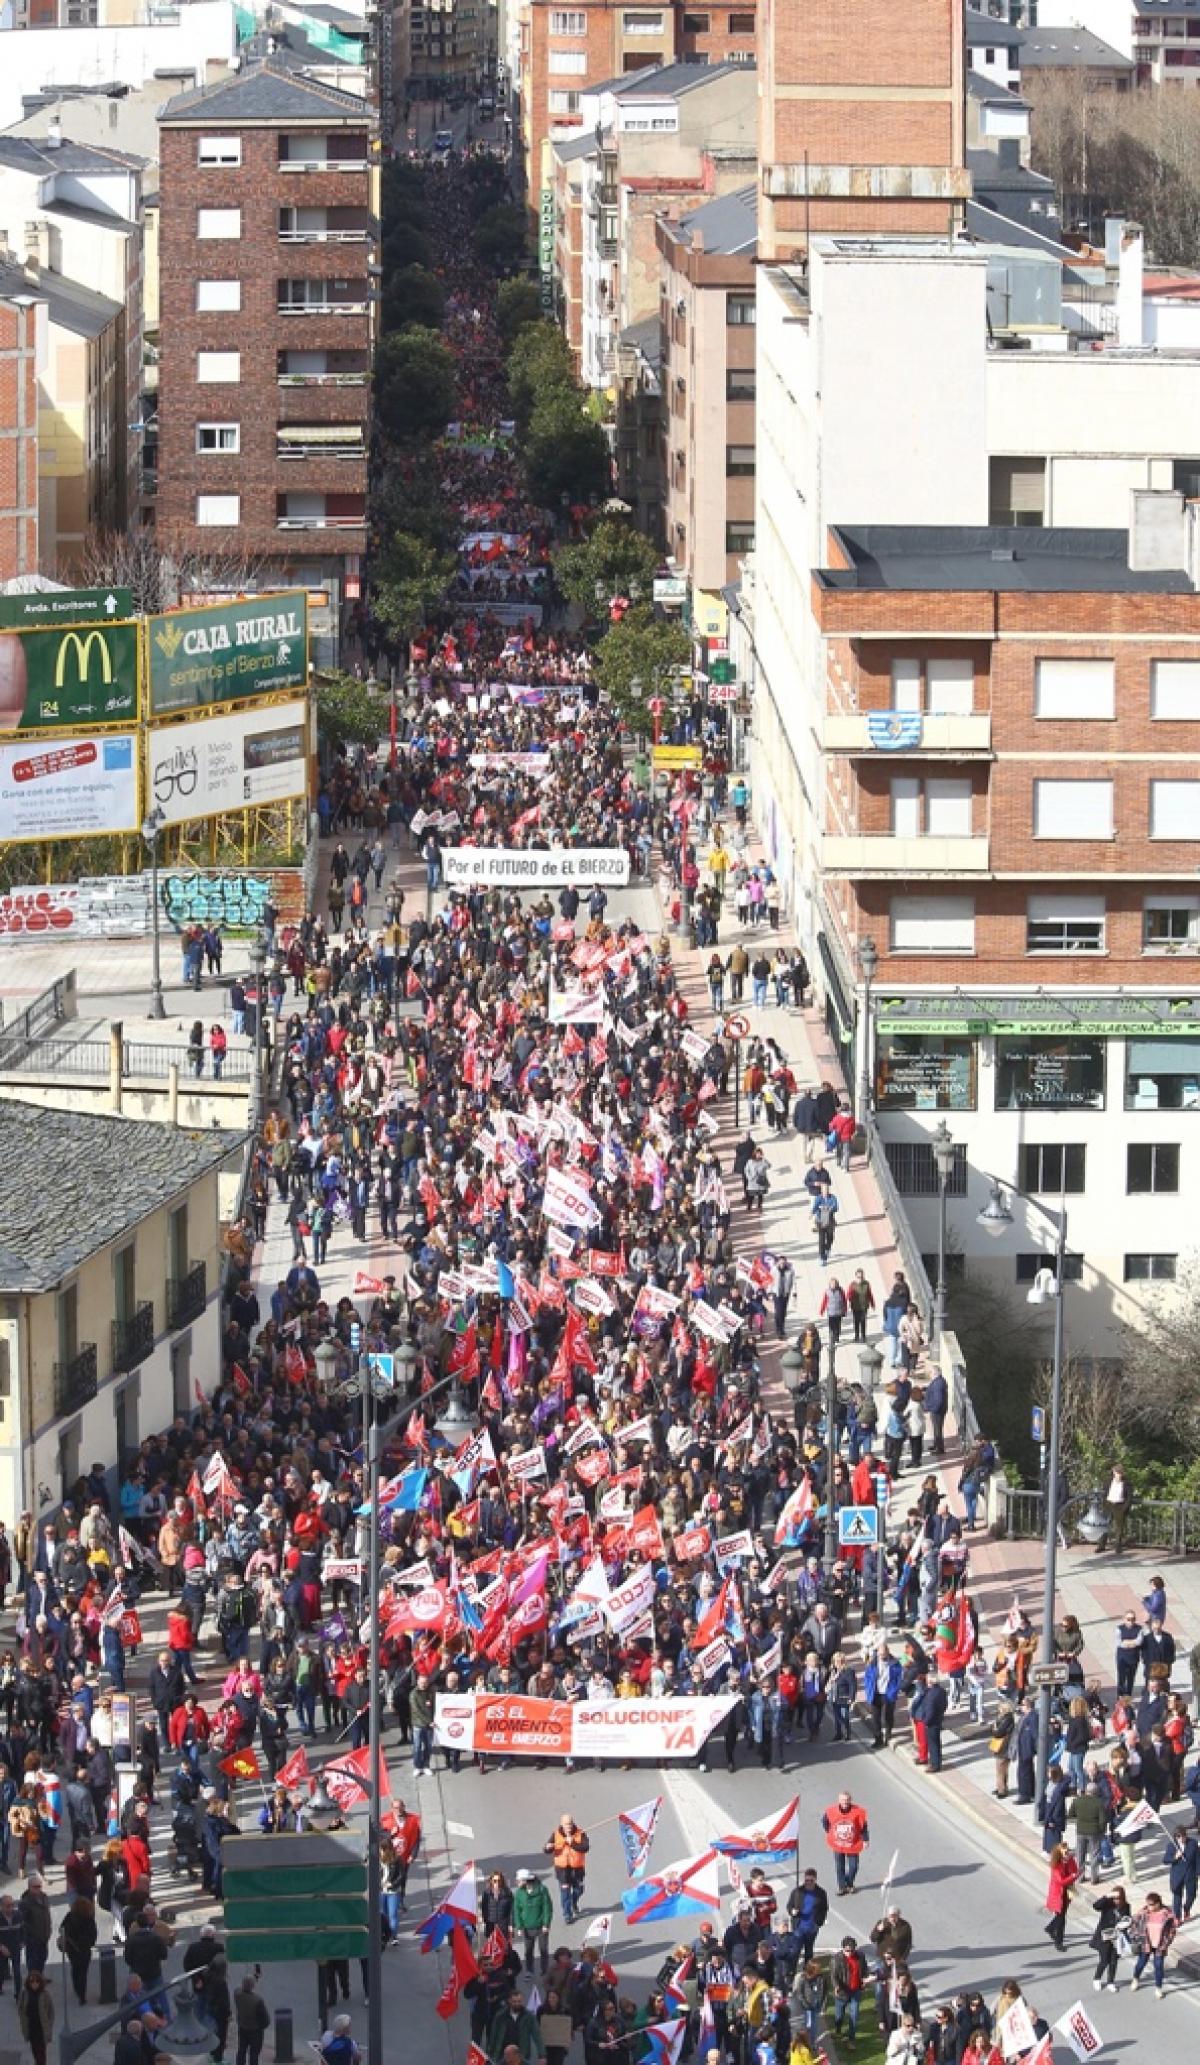 Manifestación en Ponferrada. Foto Ical